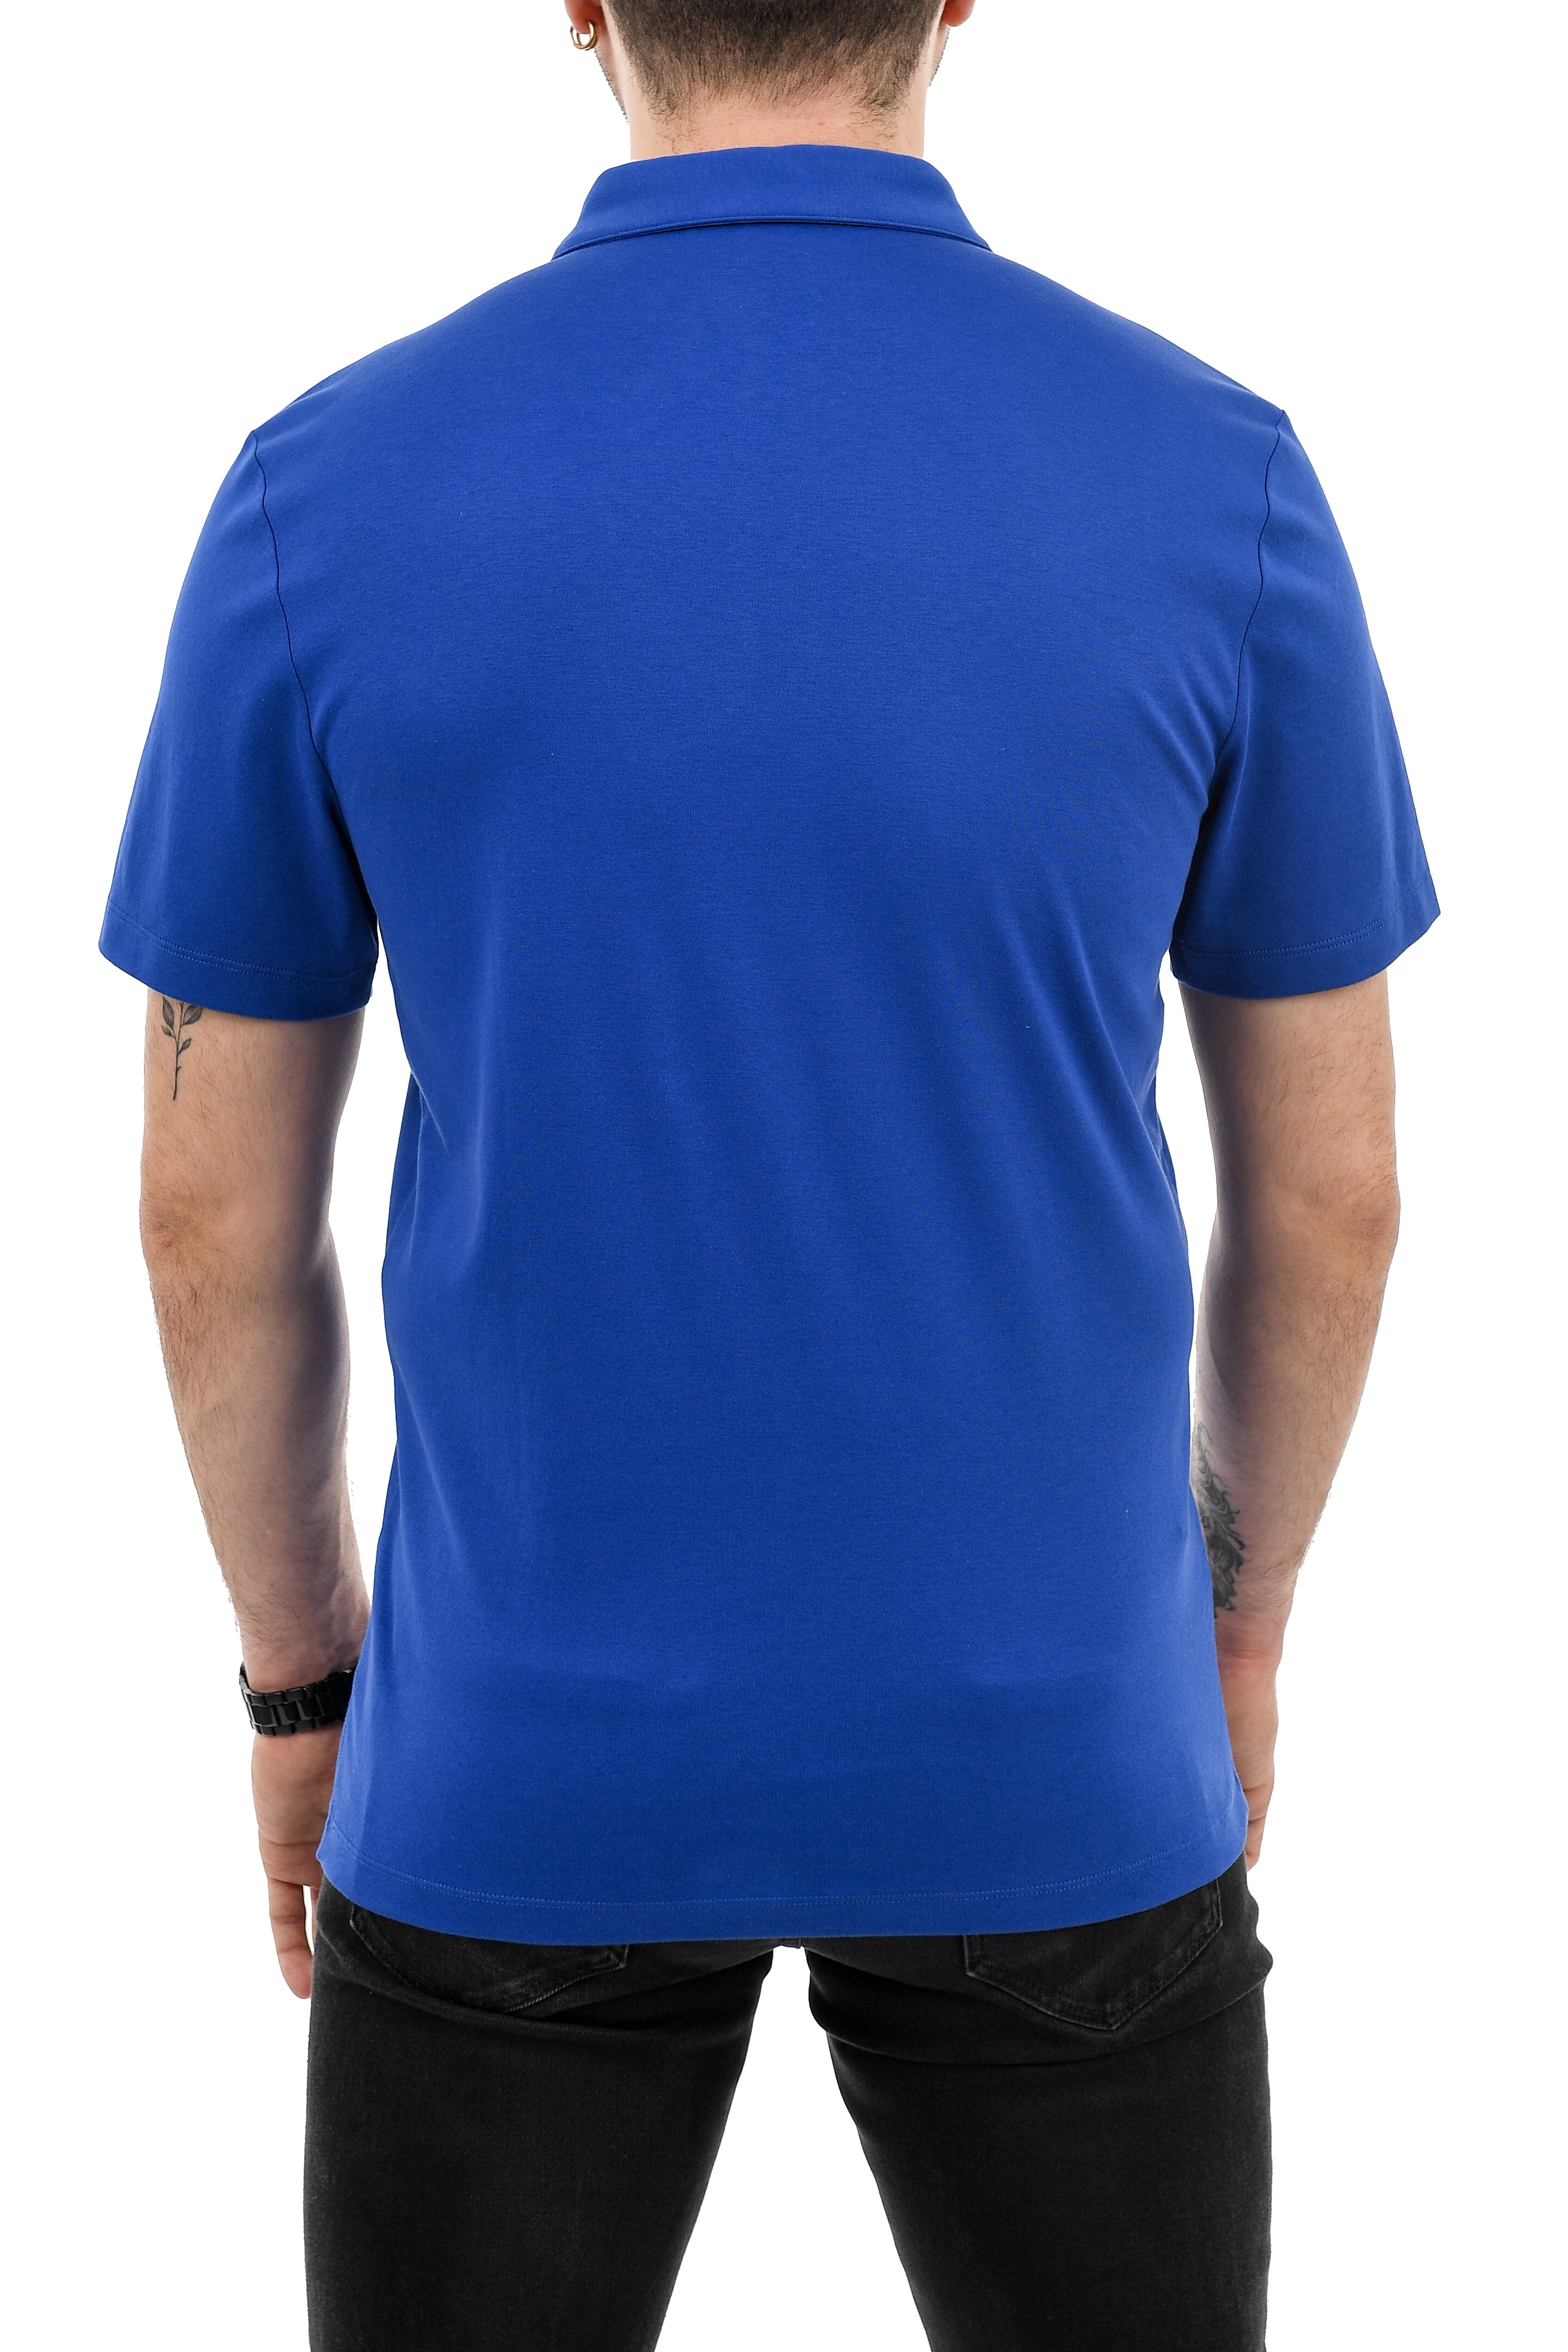 Michael Kors Short Sleeve Polo Shirt Royal Blue